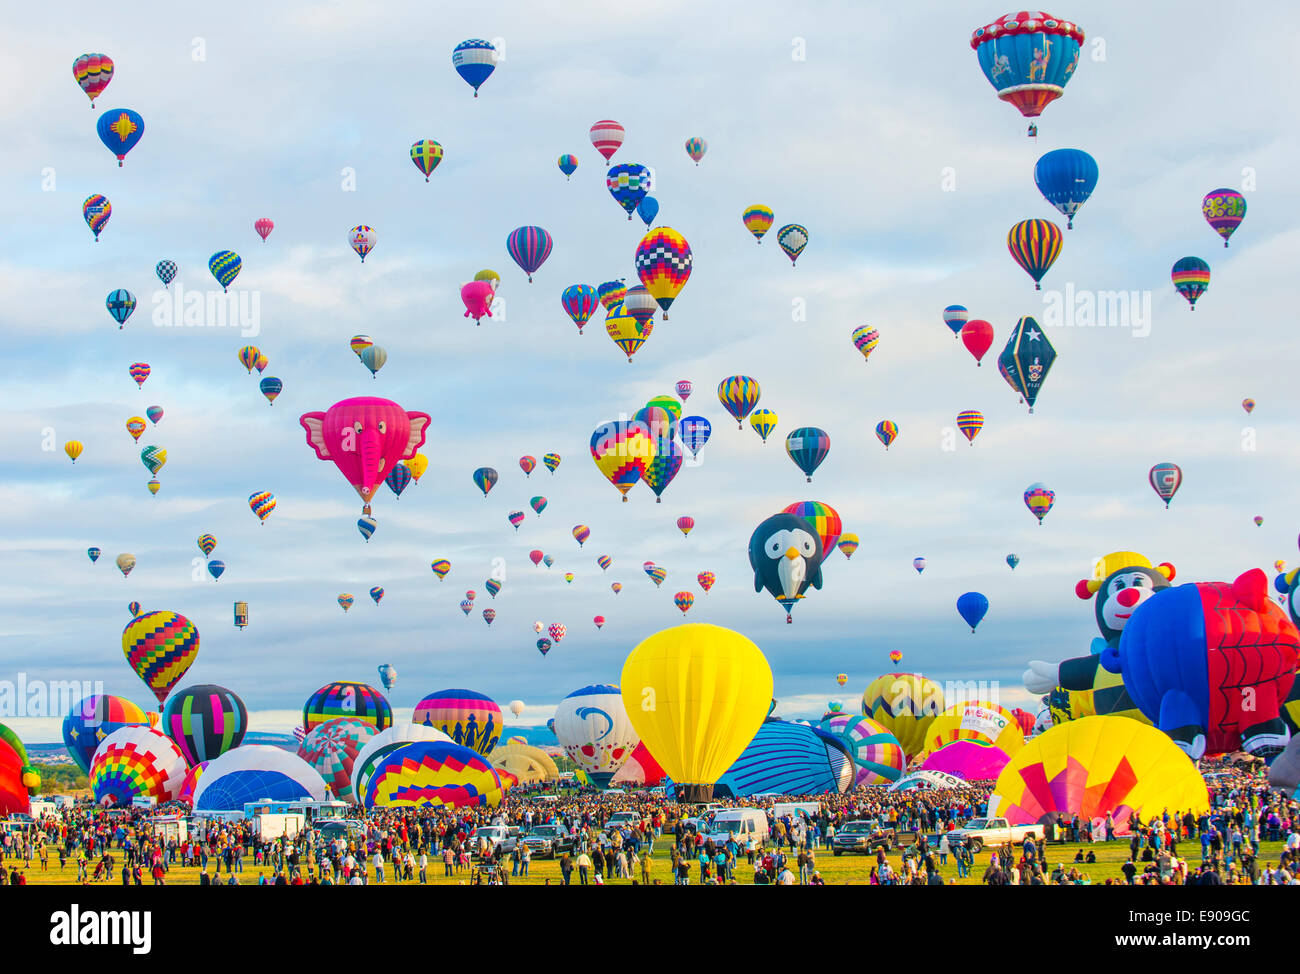 Balloons fly over Albuquerque New Mexico during the Albuquerque balloon fiesta Stock Photo